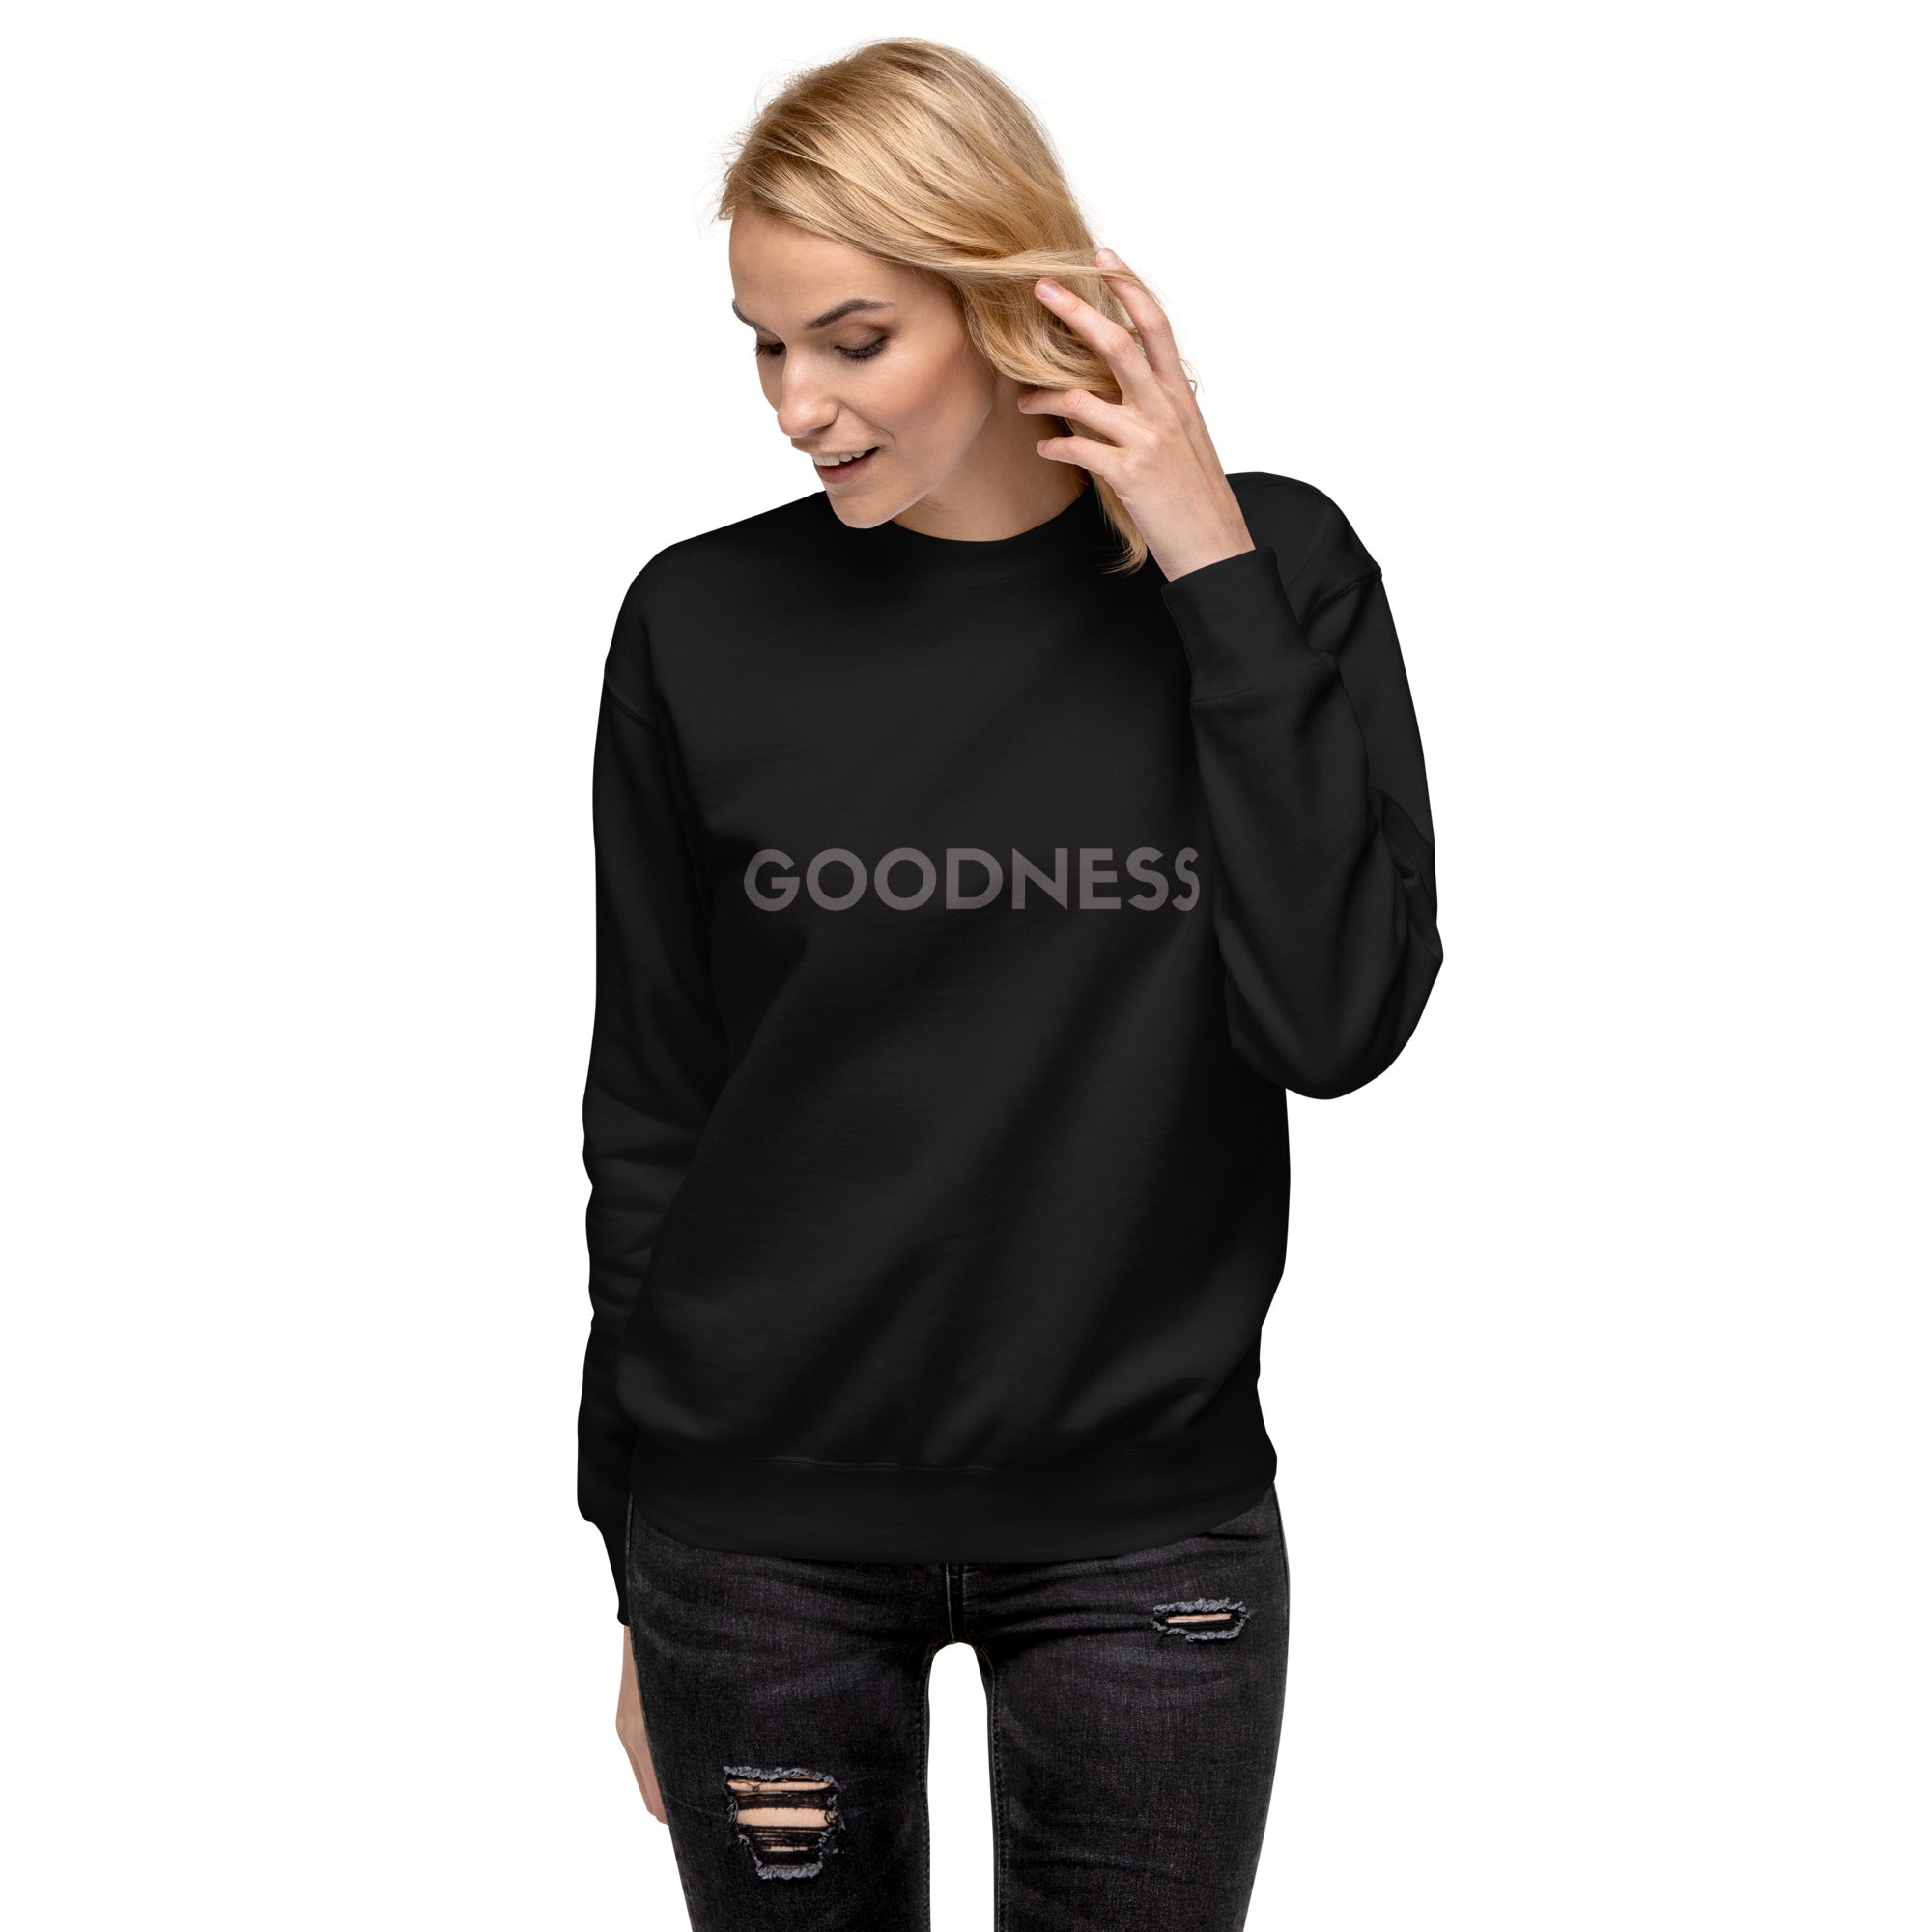 Goodness Premium Sweatshirt